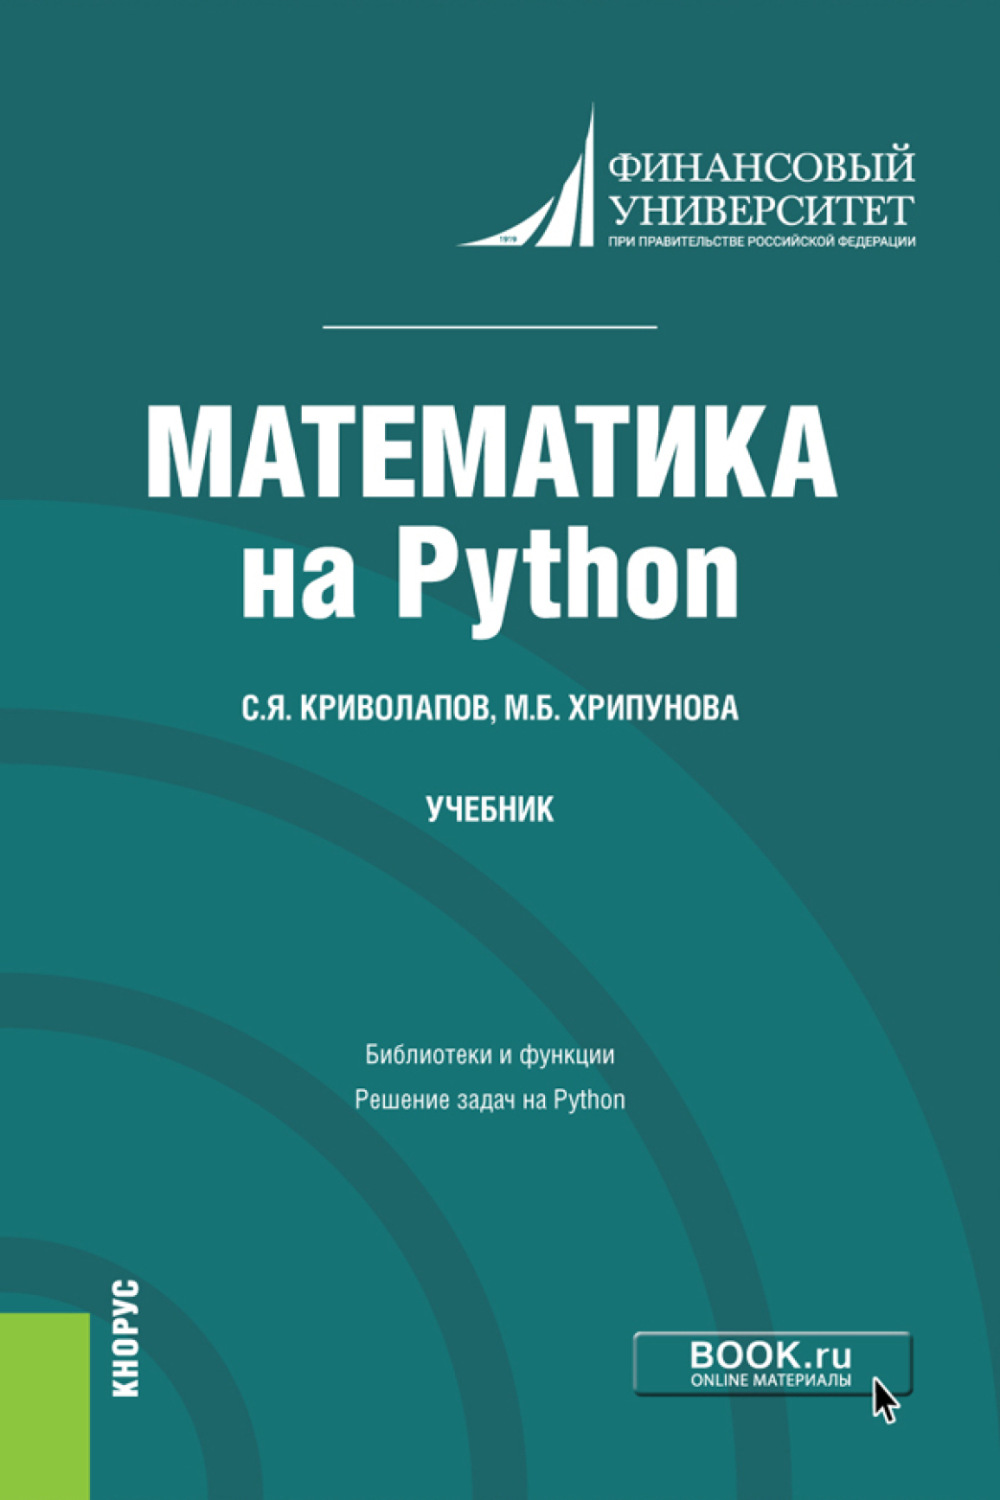 Задачи python книга. Python учебник. Математика на Python книга. Математика для экономистов. Финансовый университет математика на Python.